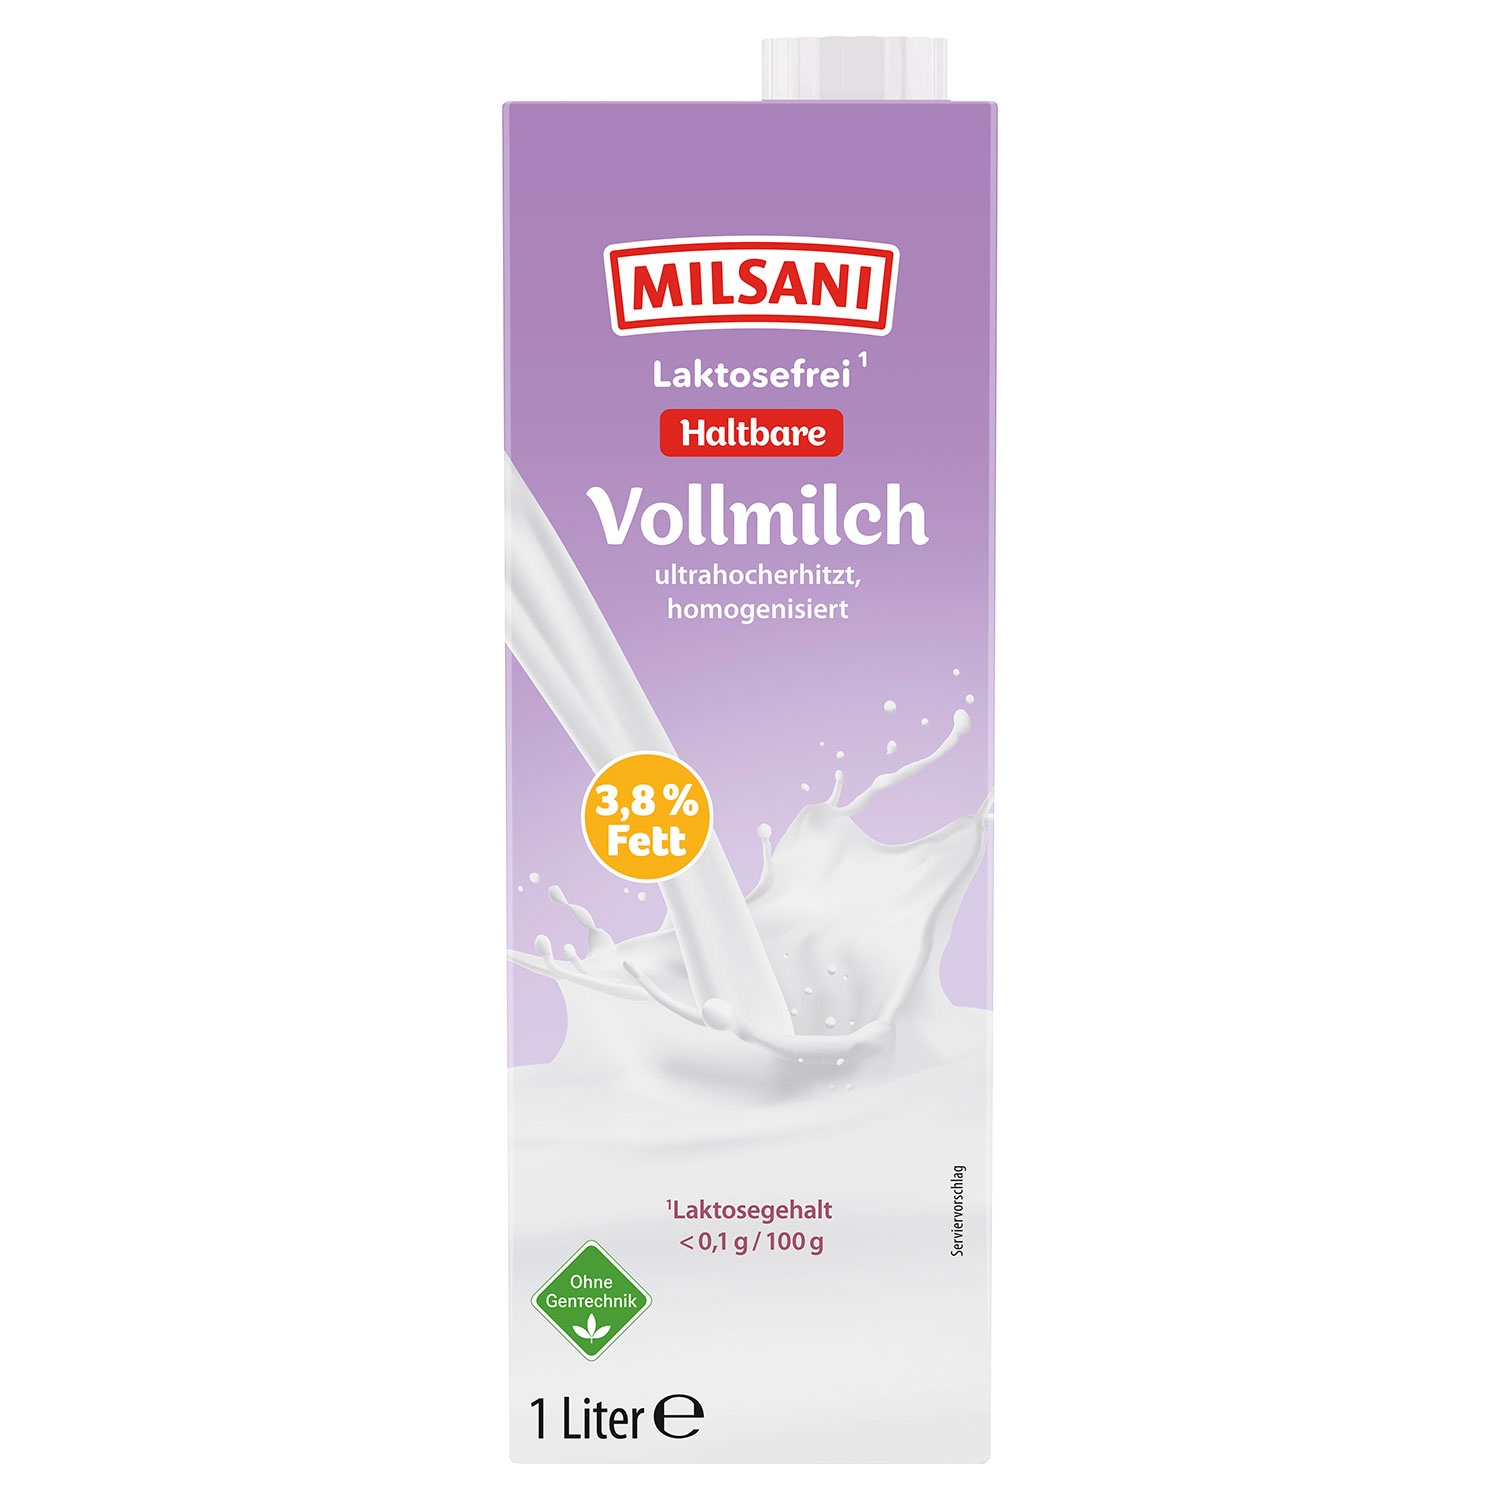 MILSANI Laktfreie H-Milch 3.8 % 1 l